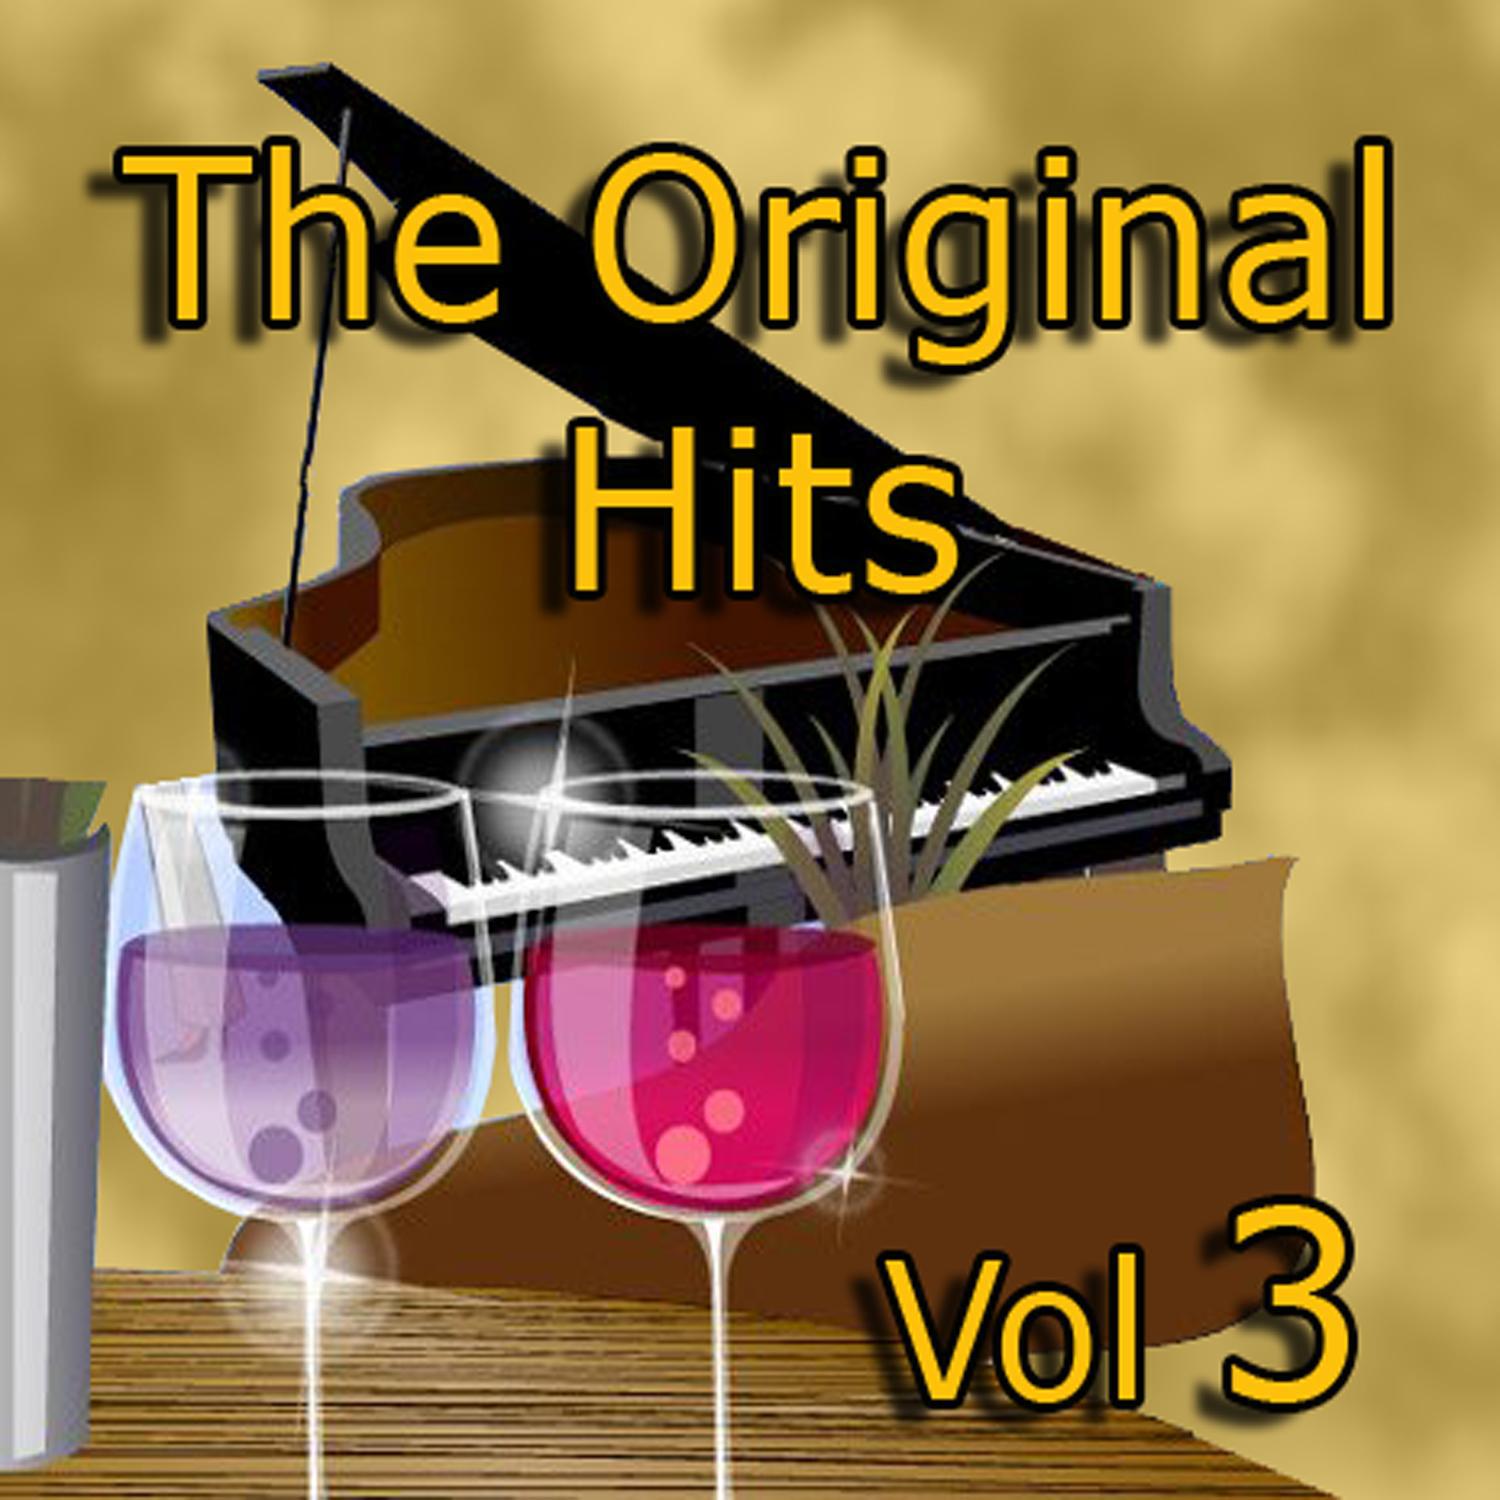 The Original Hits Vol 3